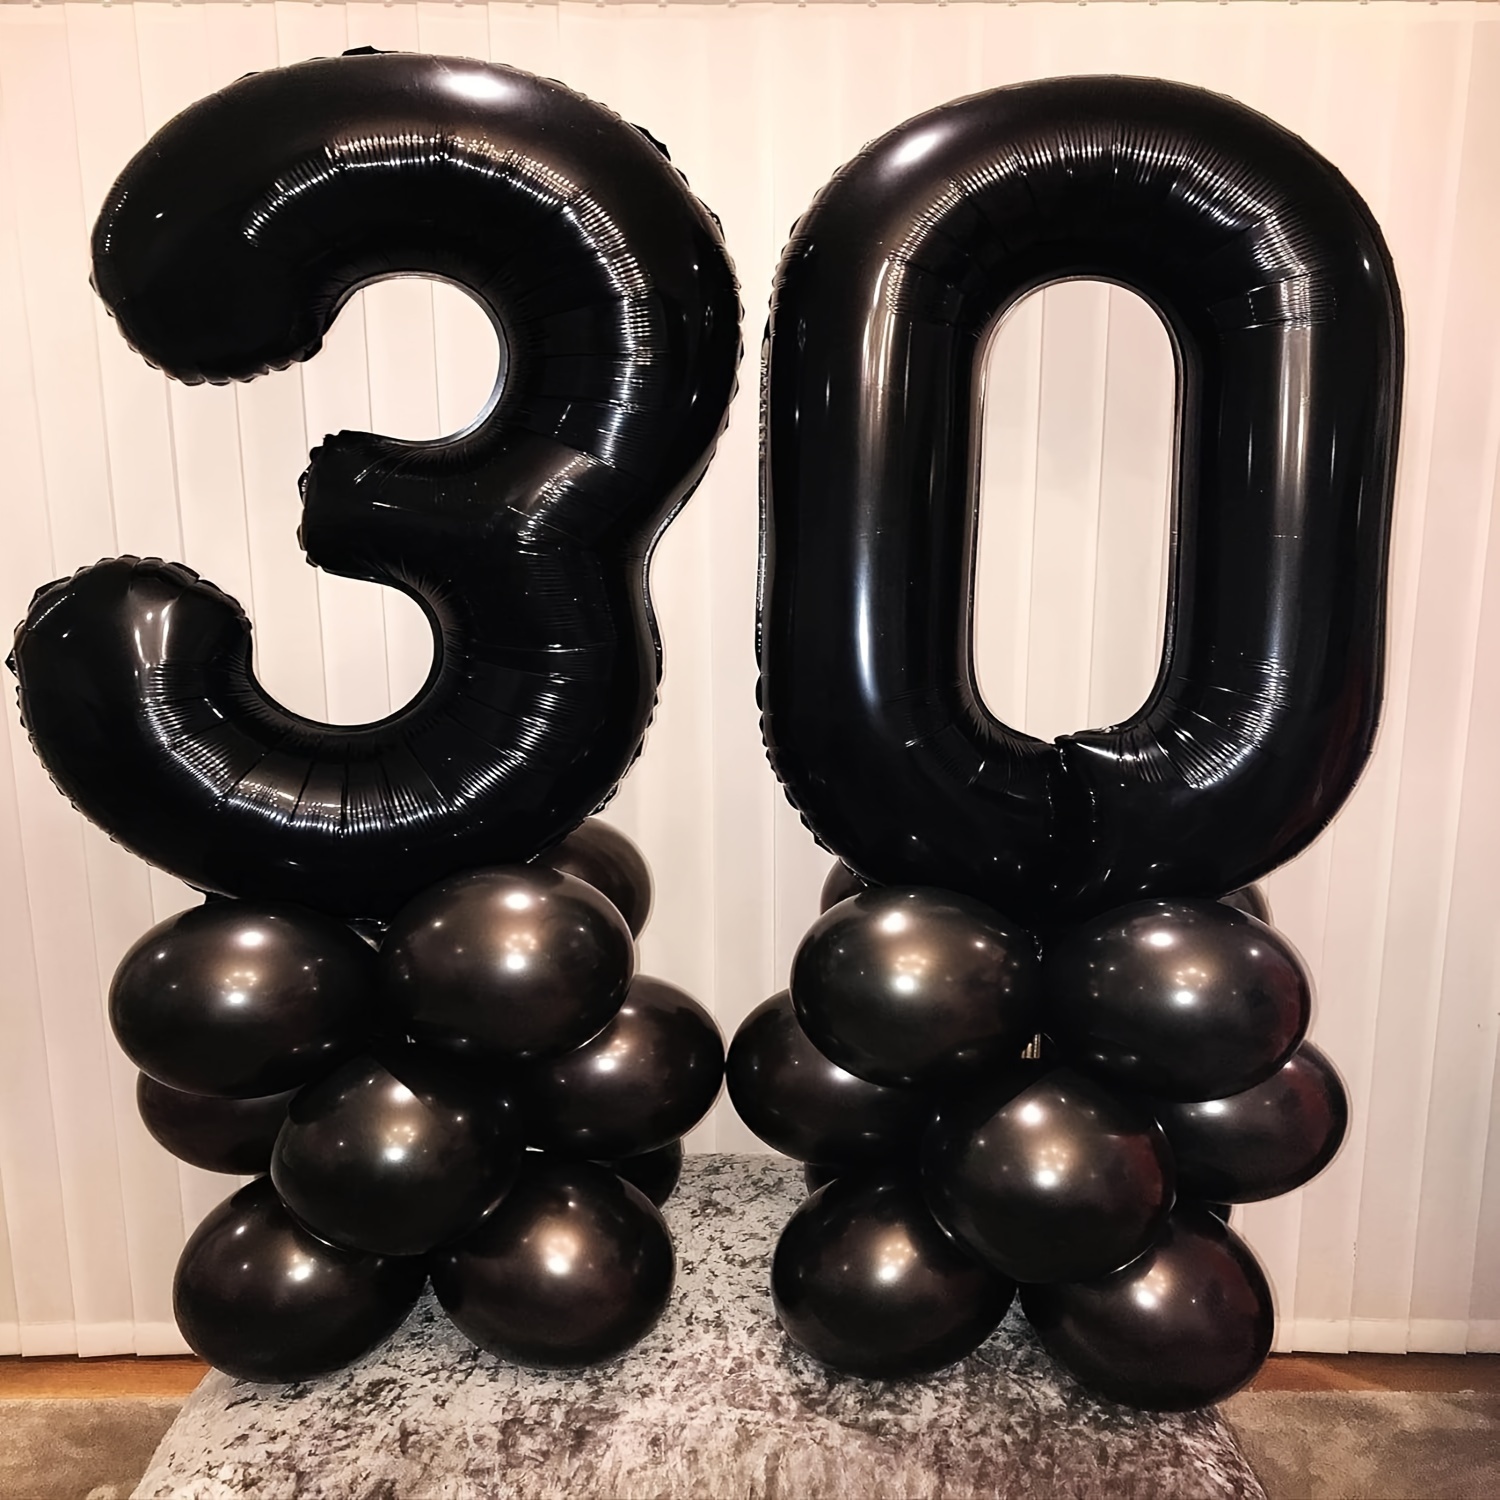  Decoraciones de cumpleaños número 30 para él y hombres, columna  de globos de 30 cumpleaños para decoraciones de fiesta de 30 años y  decoraciones de aniversario de boda 30 (negro y